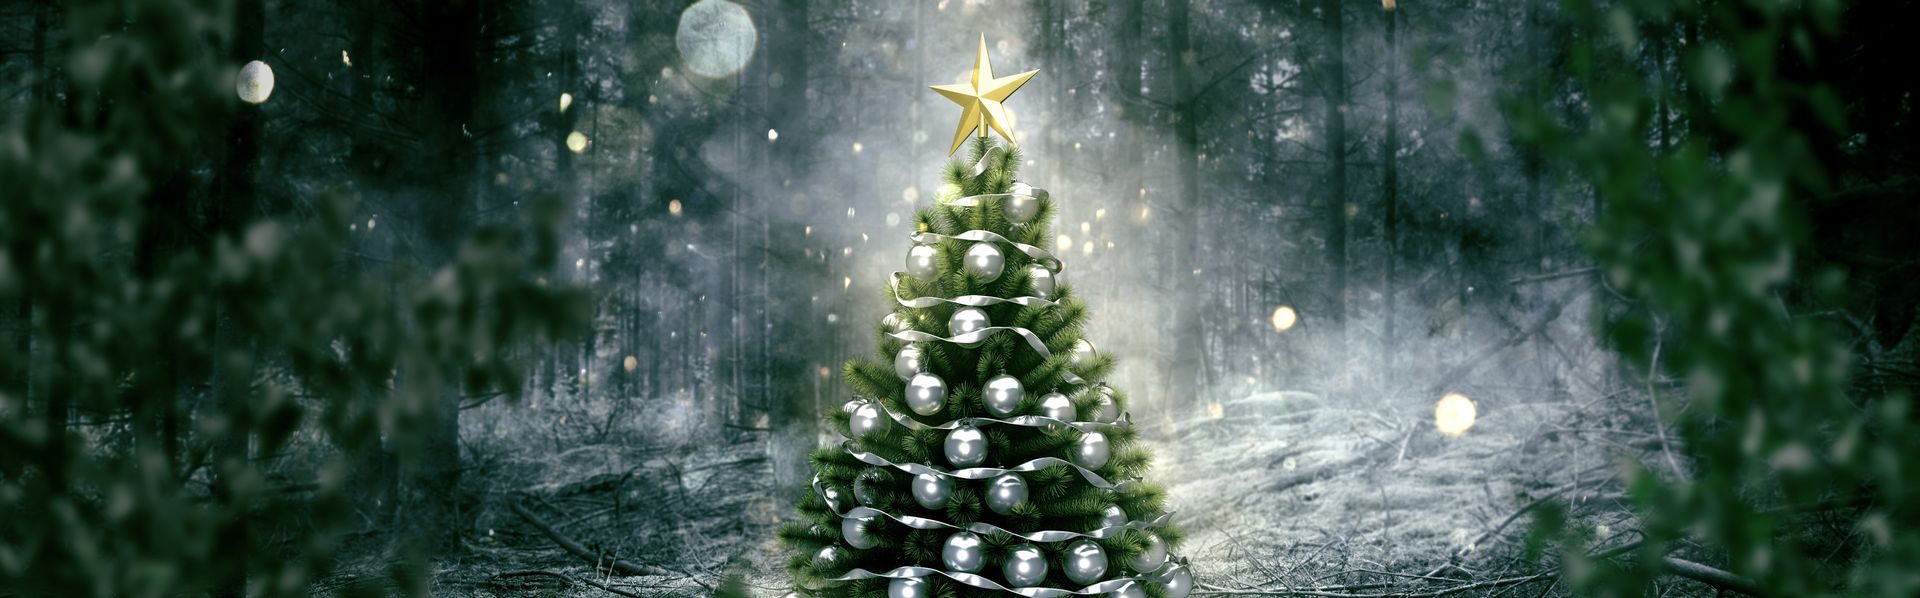 Le sapin de Noël, l'un des symboles des fêtes de fin d'année dans le monde chrétien. [lassedesignen - Fotolia]